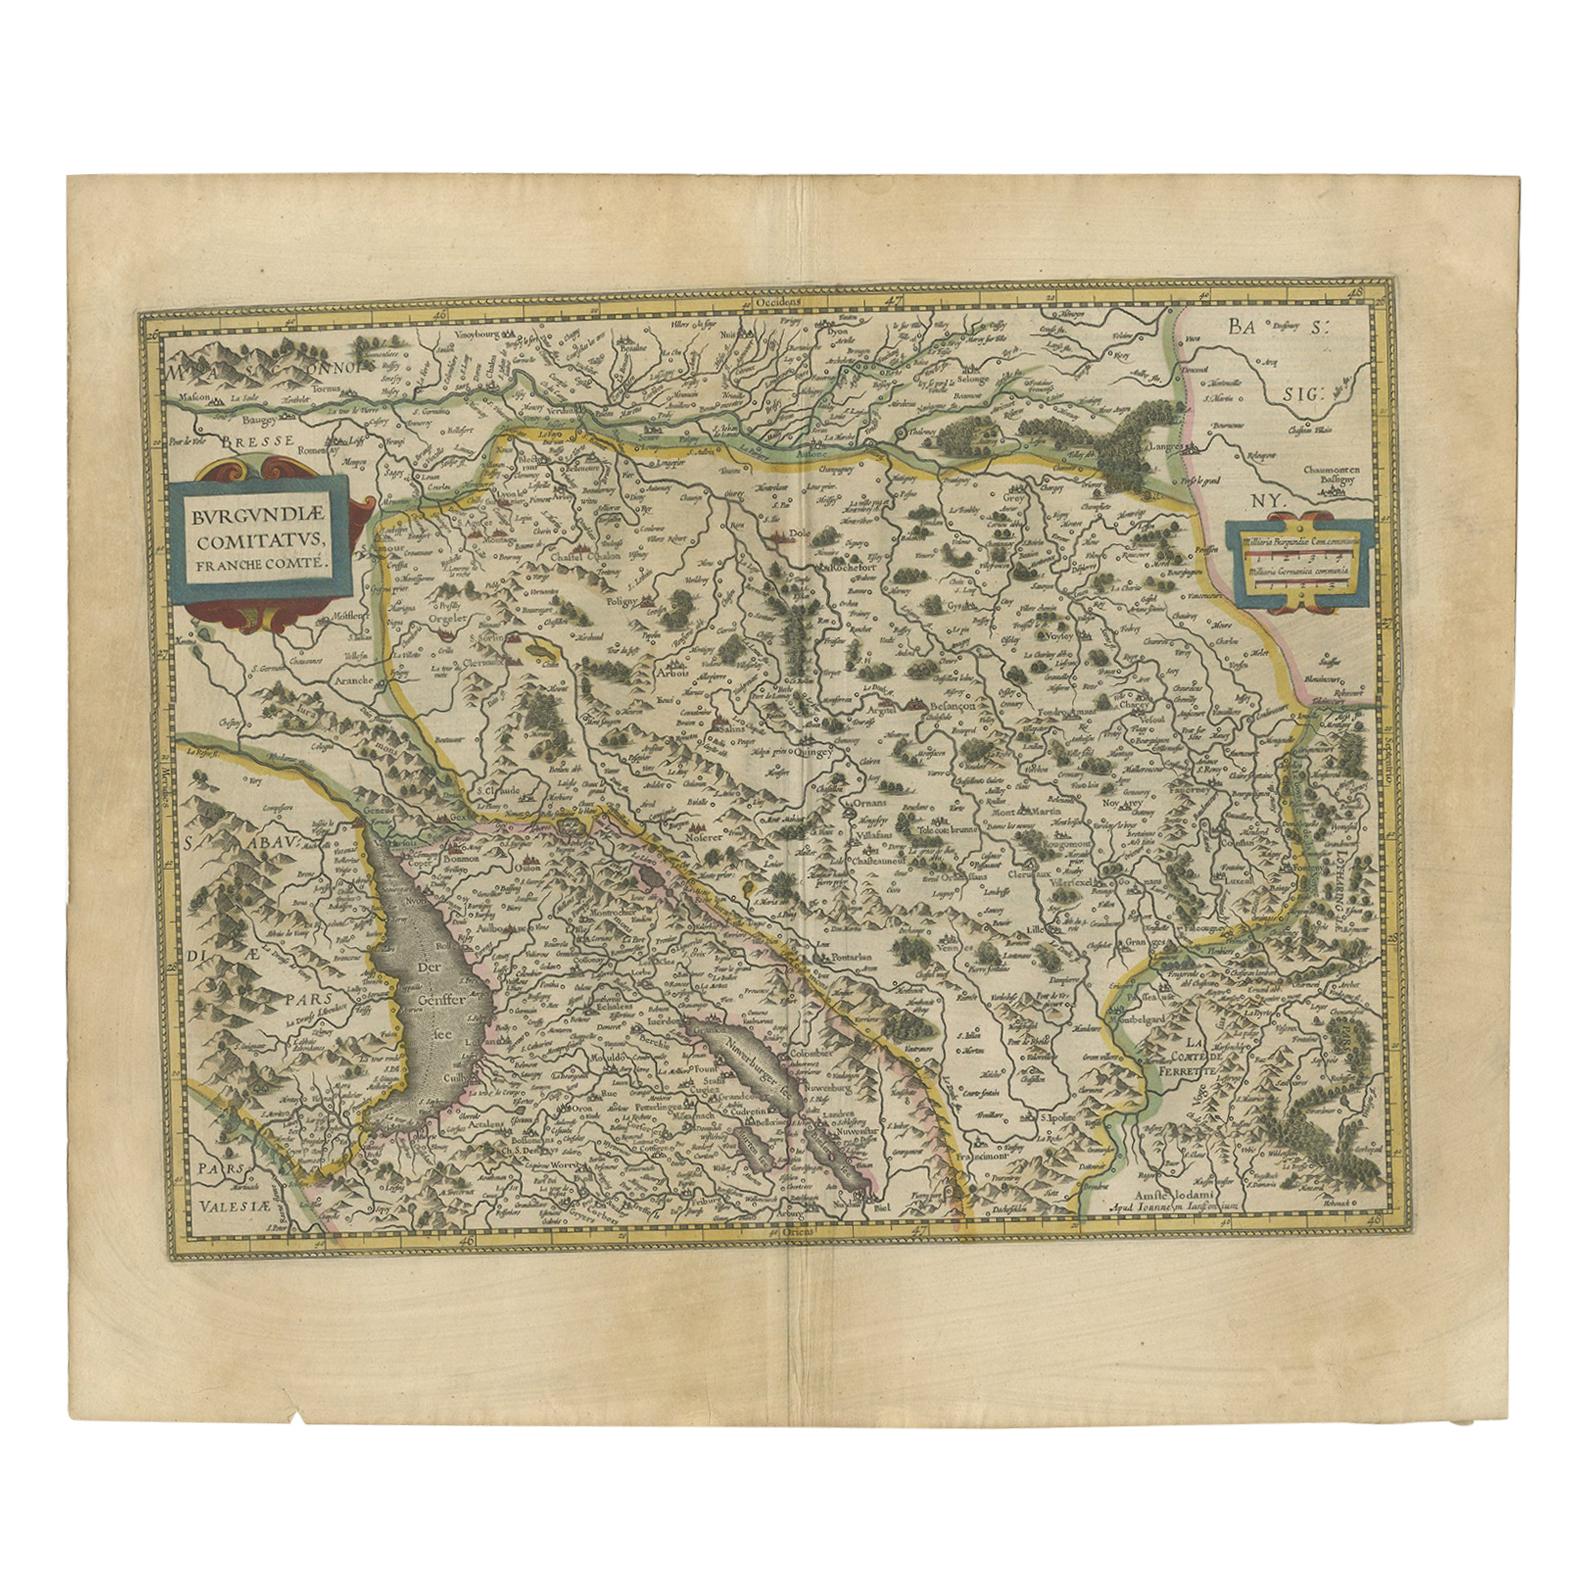 Antique Map of the Region of Franche-Comté by Janssonius, circa 1650